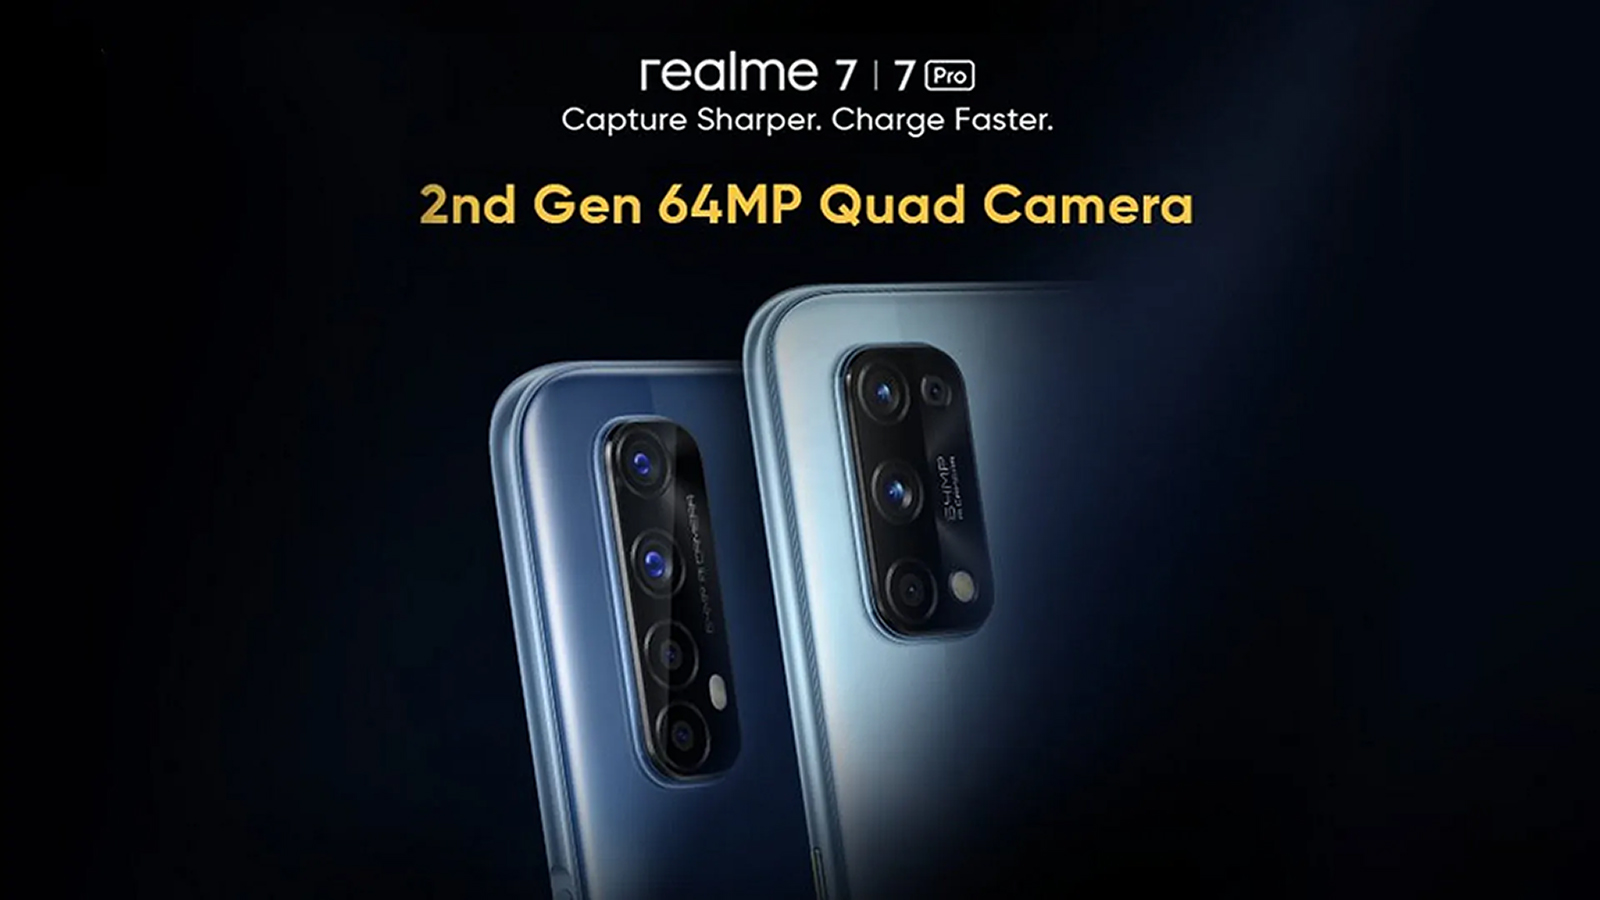 Parádní Realme 7 a 7 Pro jdou do prodeje. Nabízí rychlé dobíjení i skvělou výbavu - FoneTech